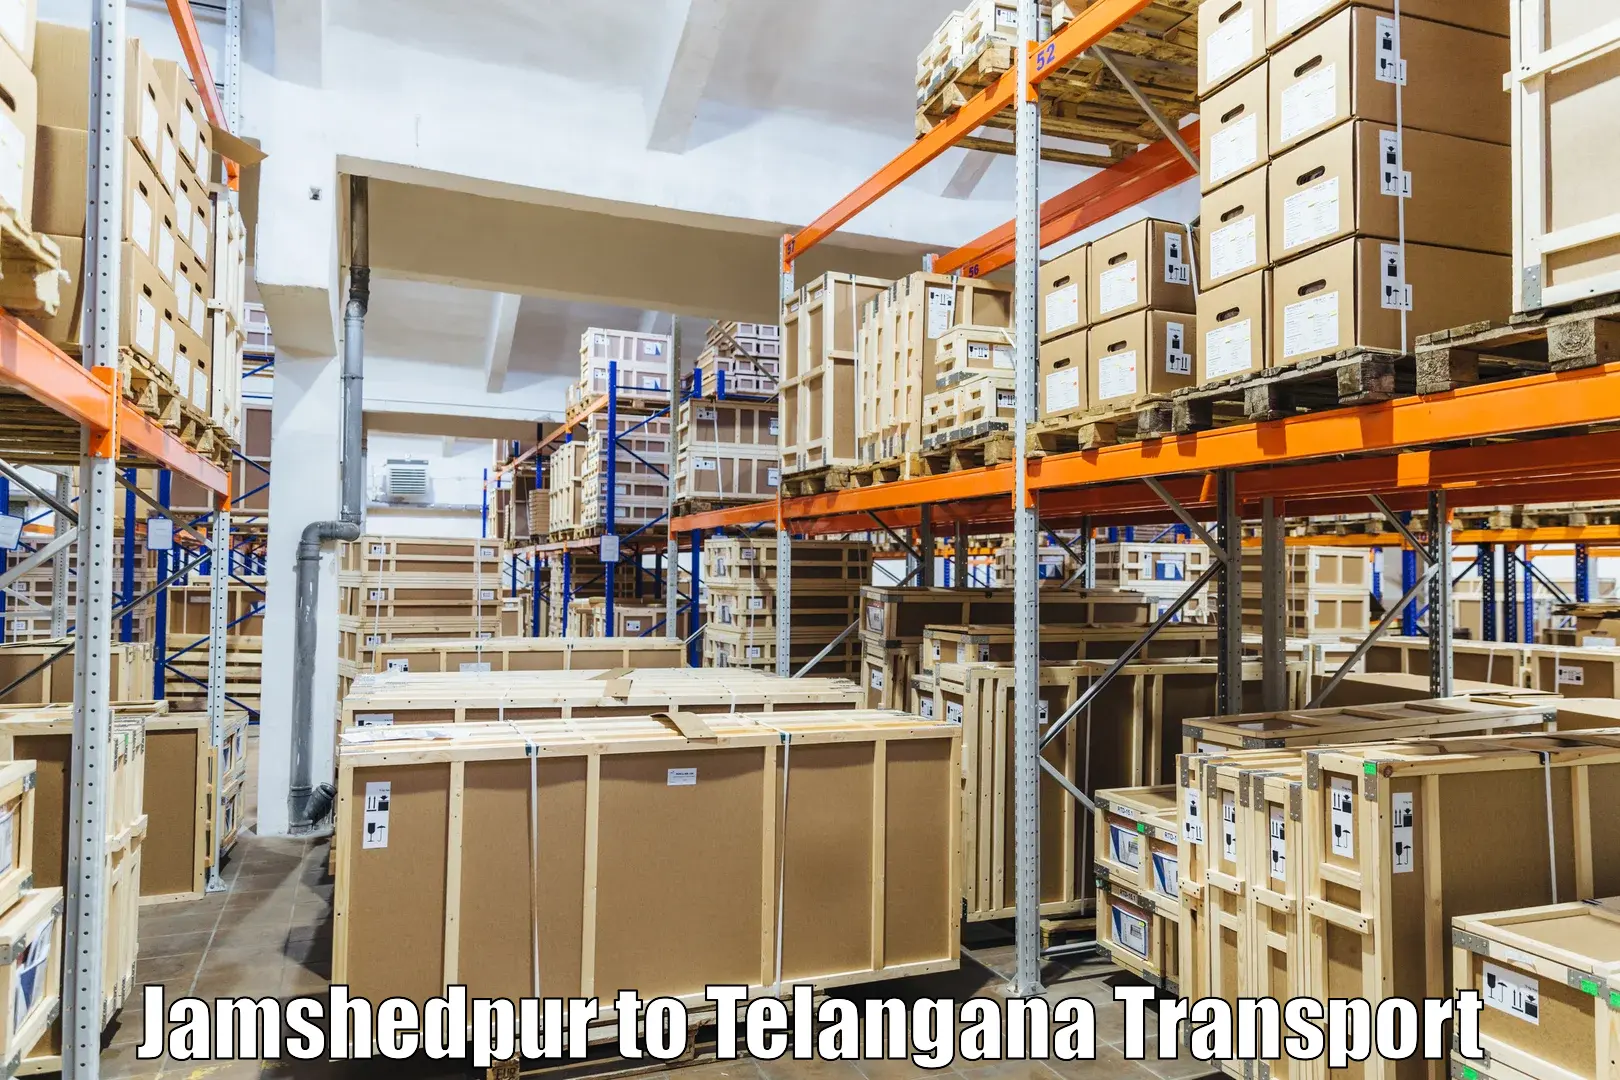 Nationwide transport services Jamshedpur to Nalgonda